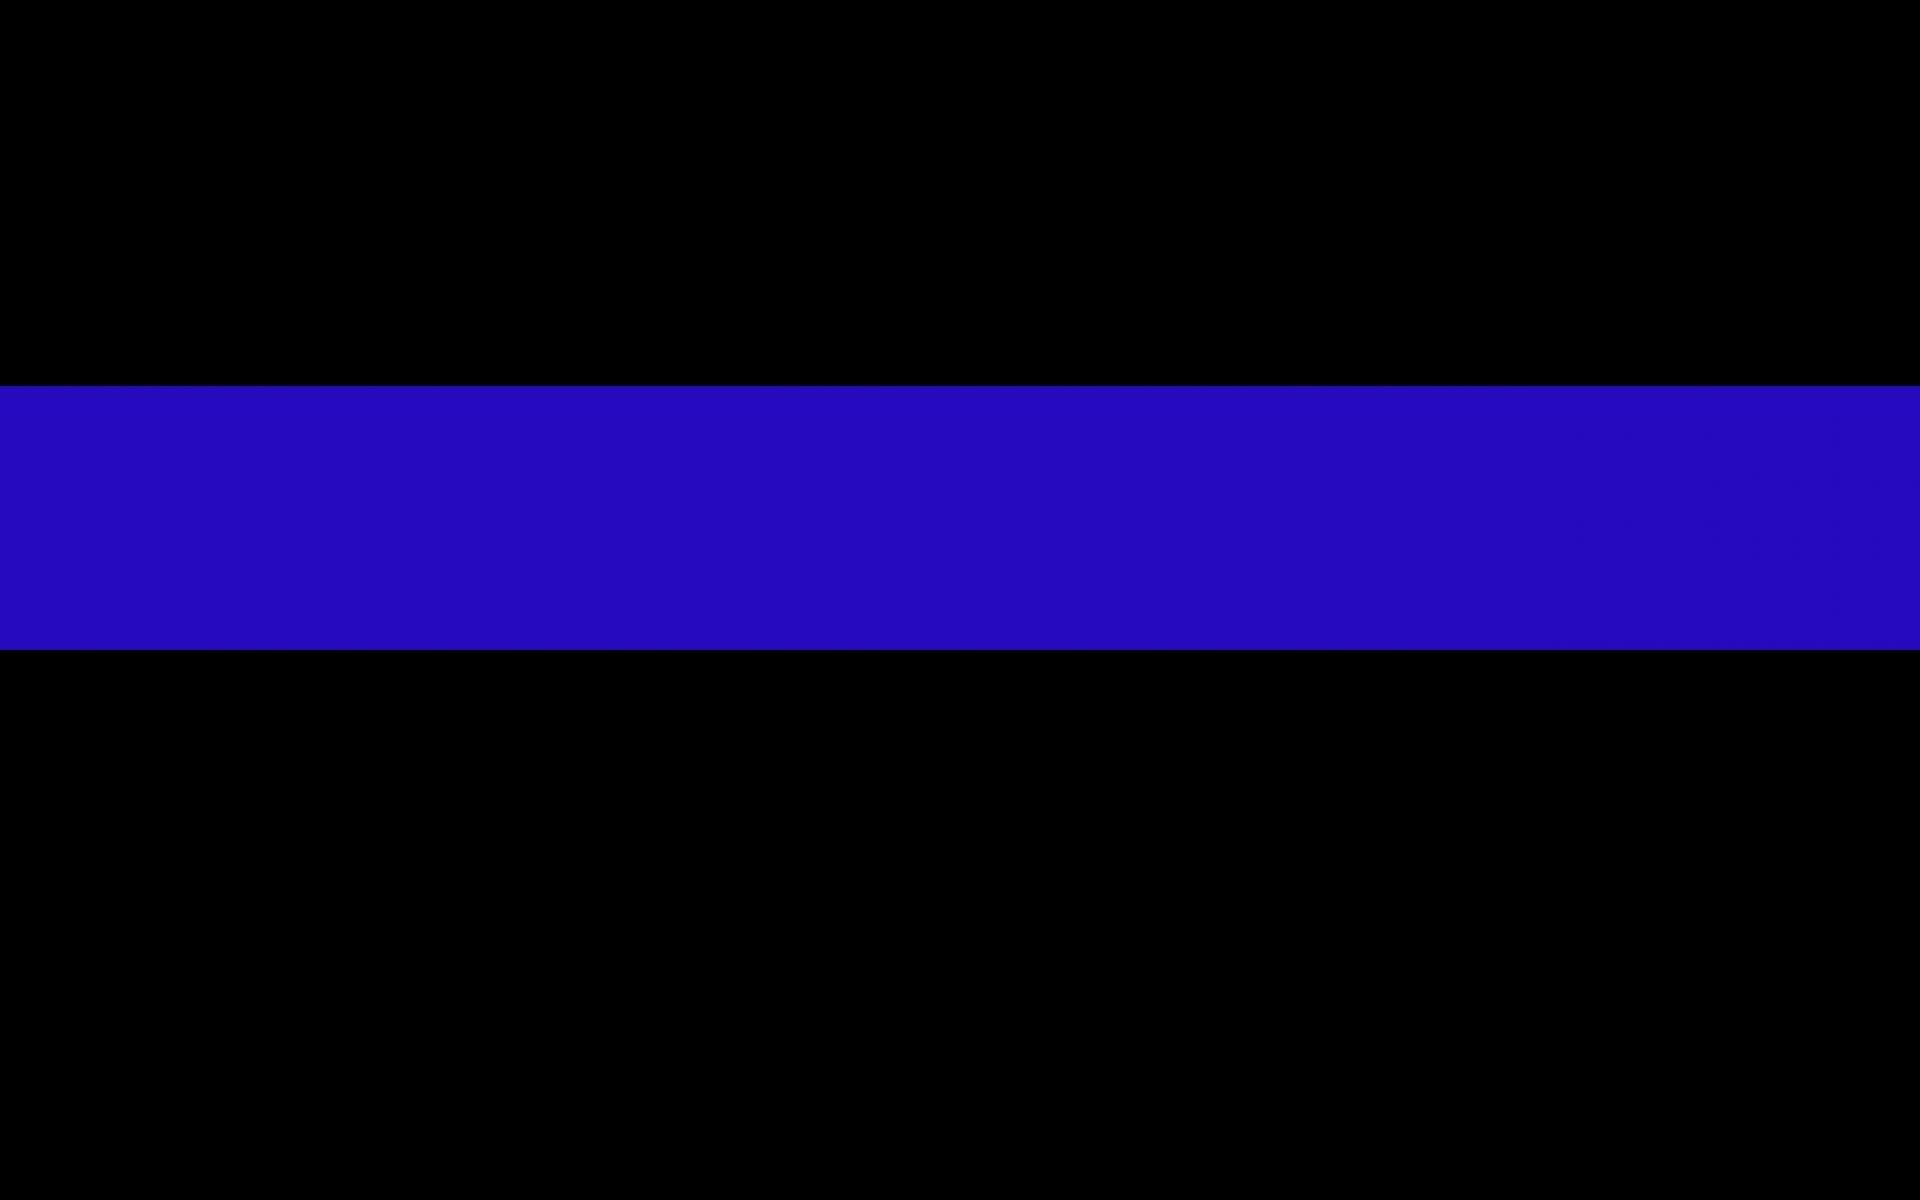 blue line law enforcement backgrounds le themed plix 1920x1200